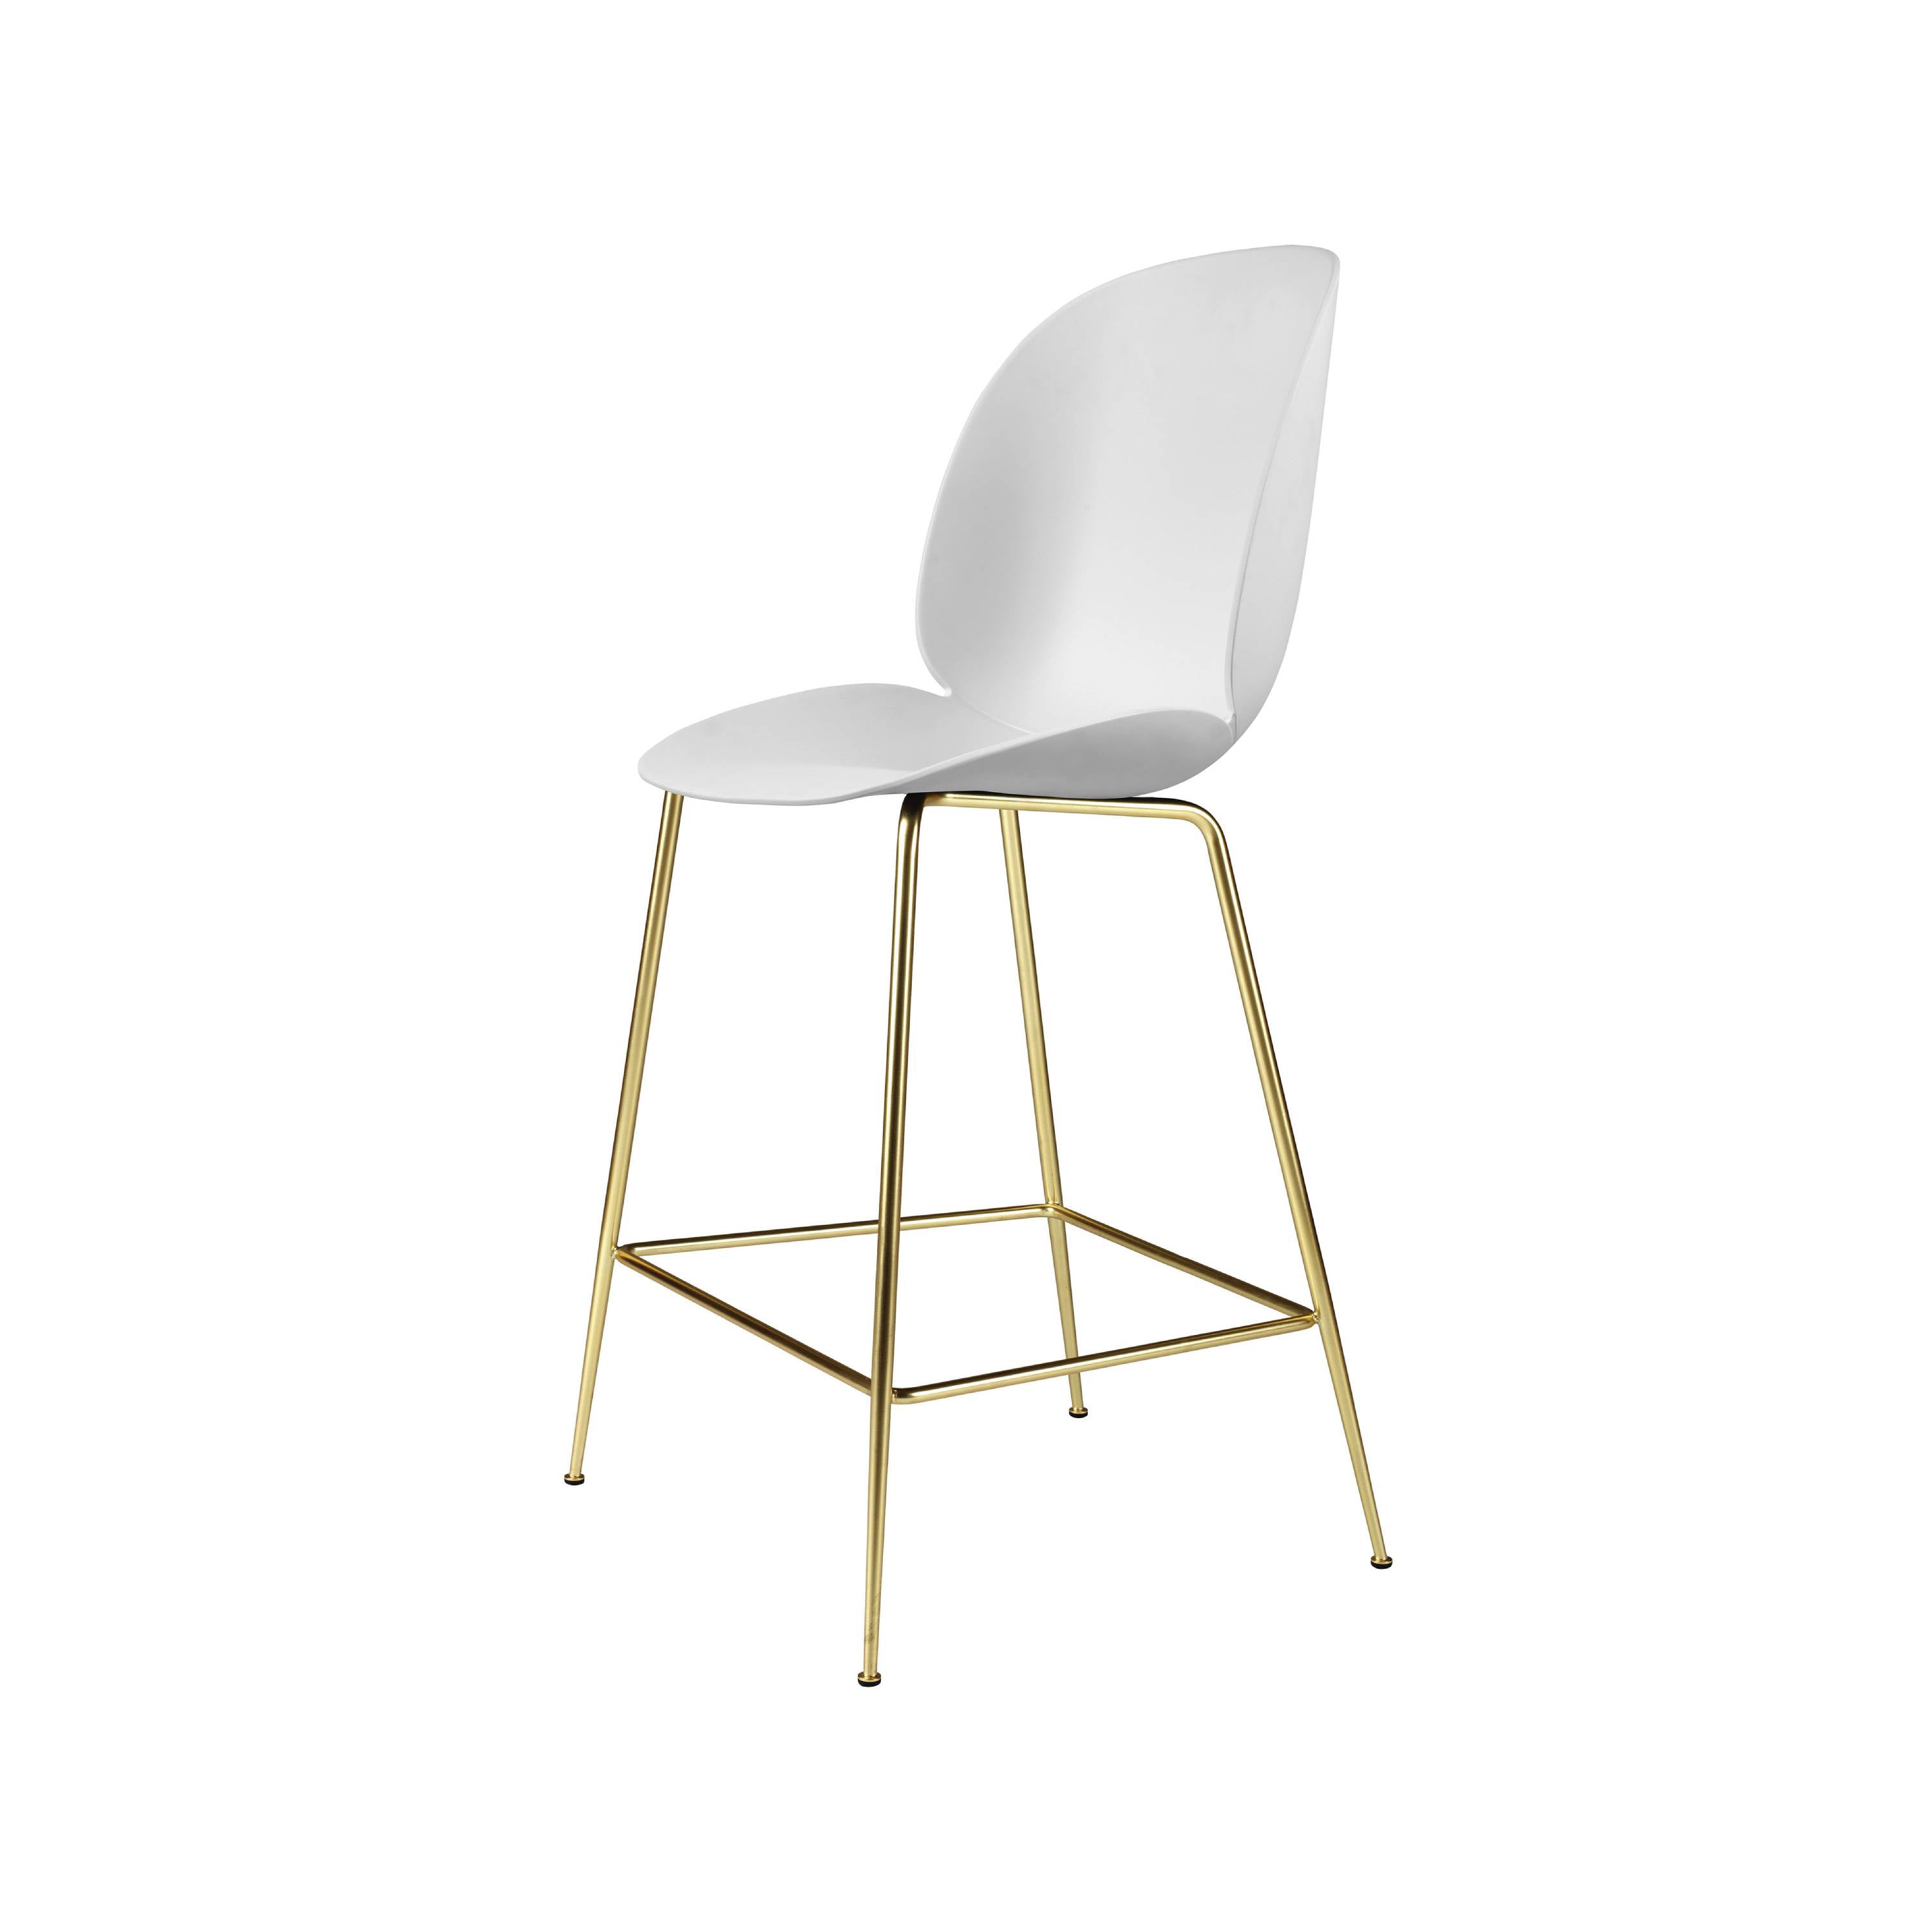 Beetle Bar + Counter Chair: Felt Glides + Counter + Alabaster White + Brass Semi Matt